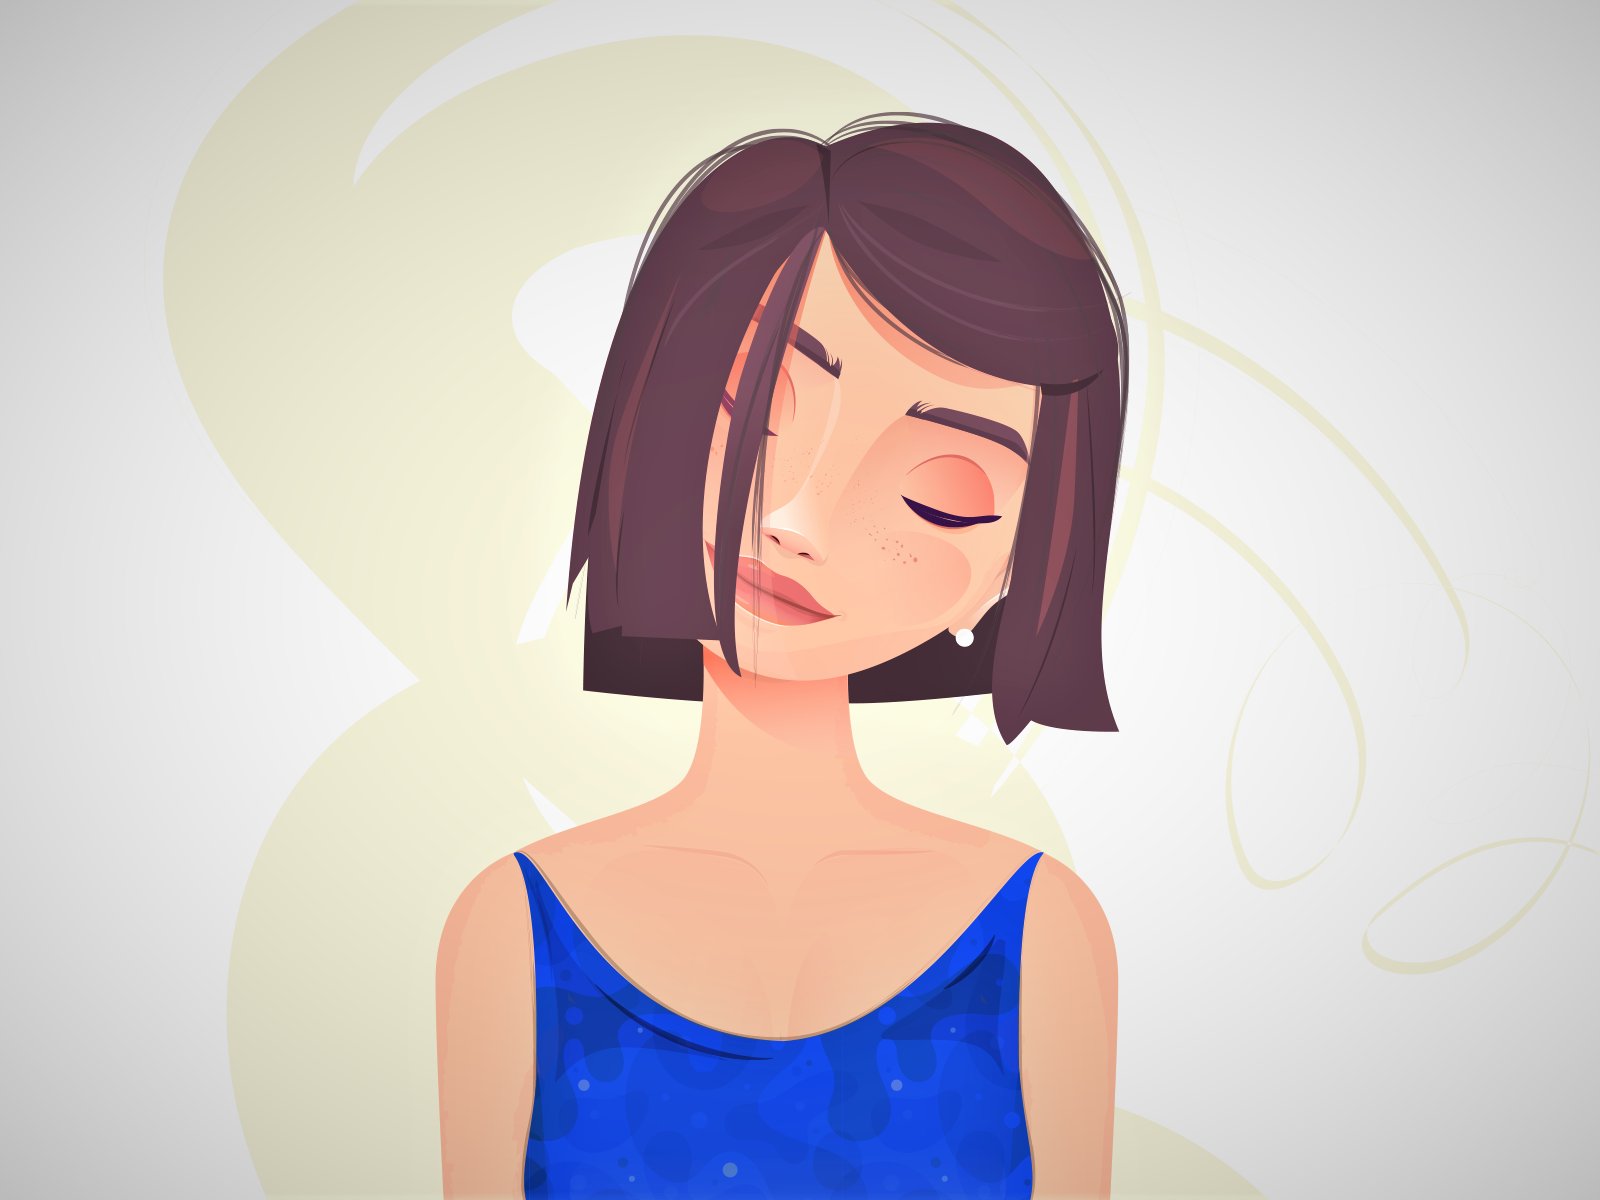 Ilustração de uma mulher com olhos fechados.